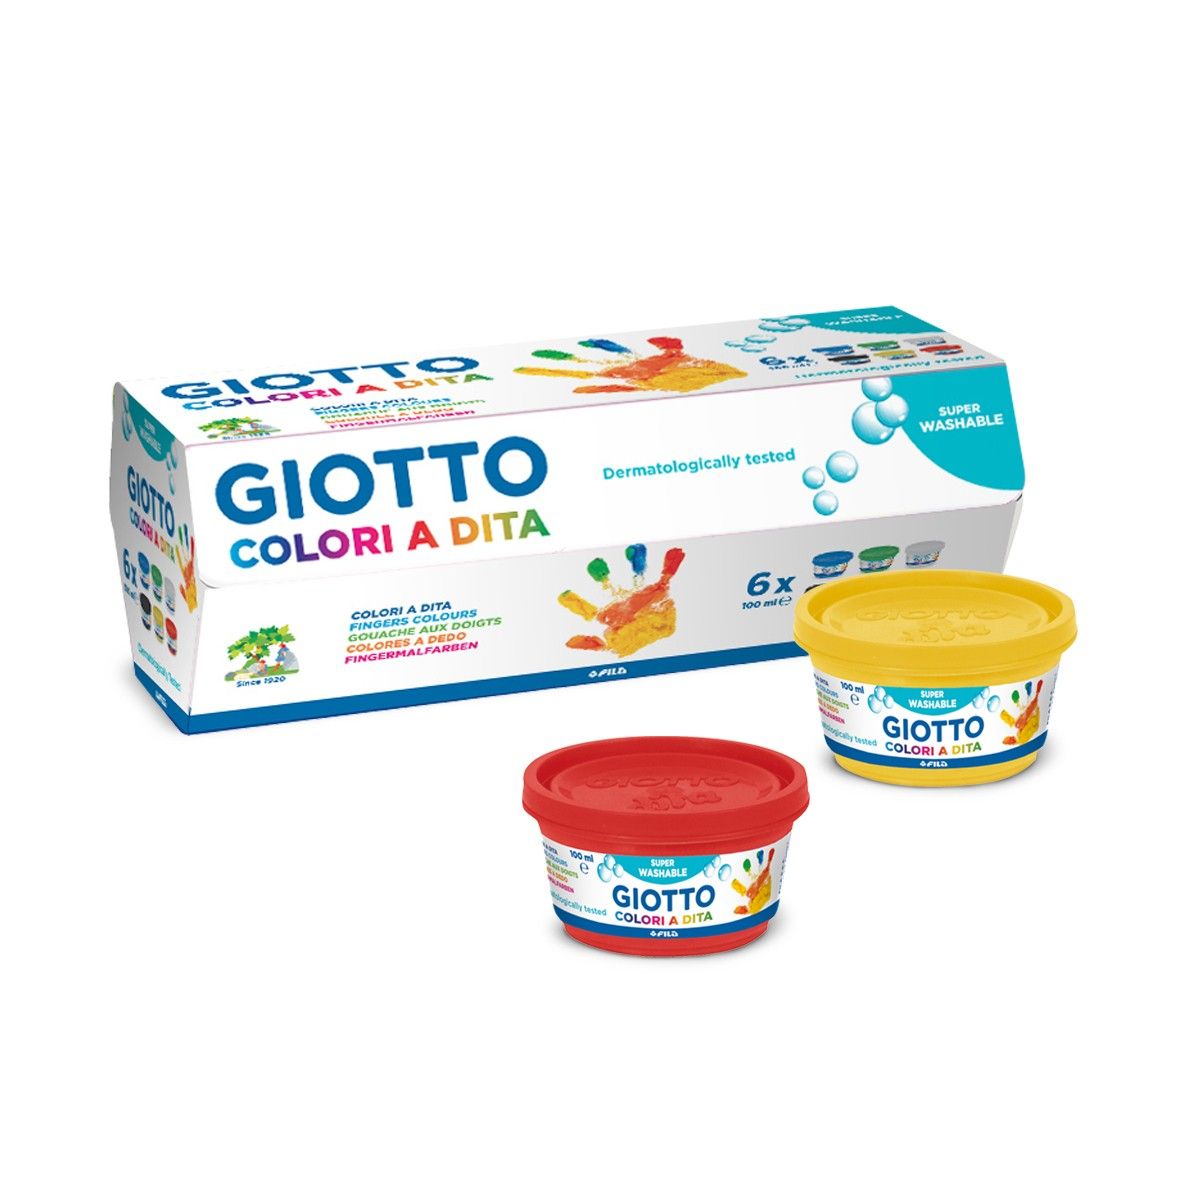 Colori a dita Giotto - 465489